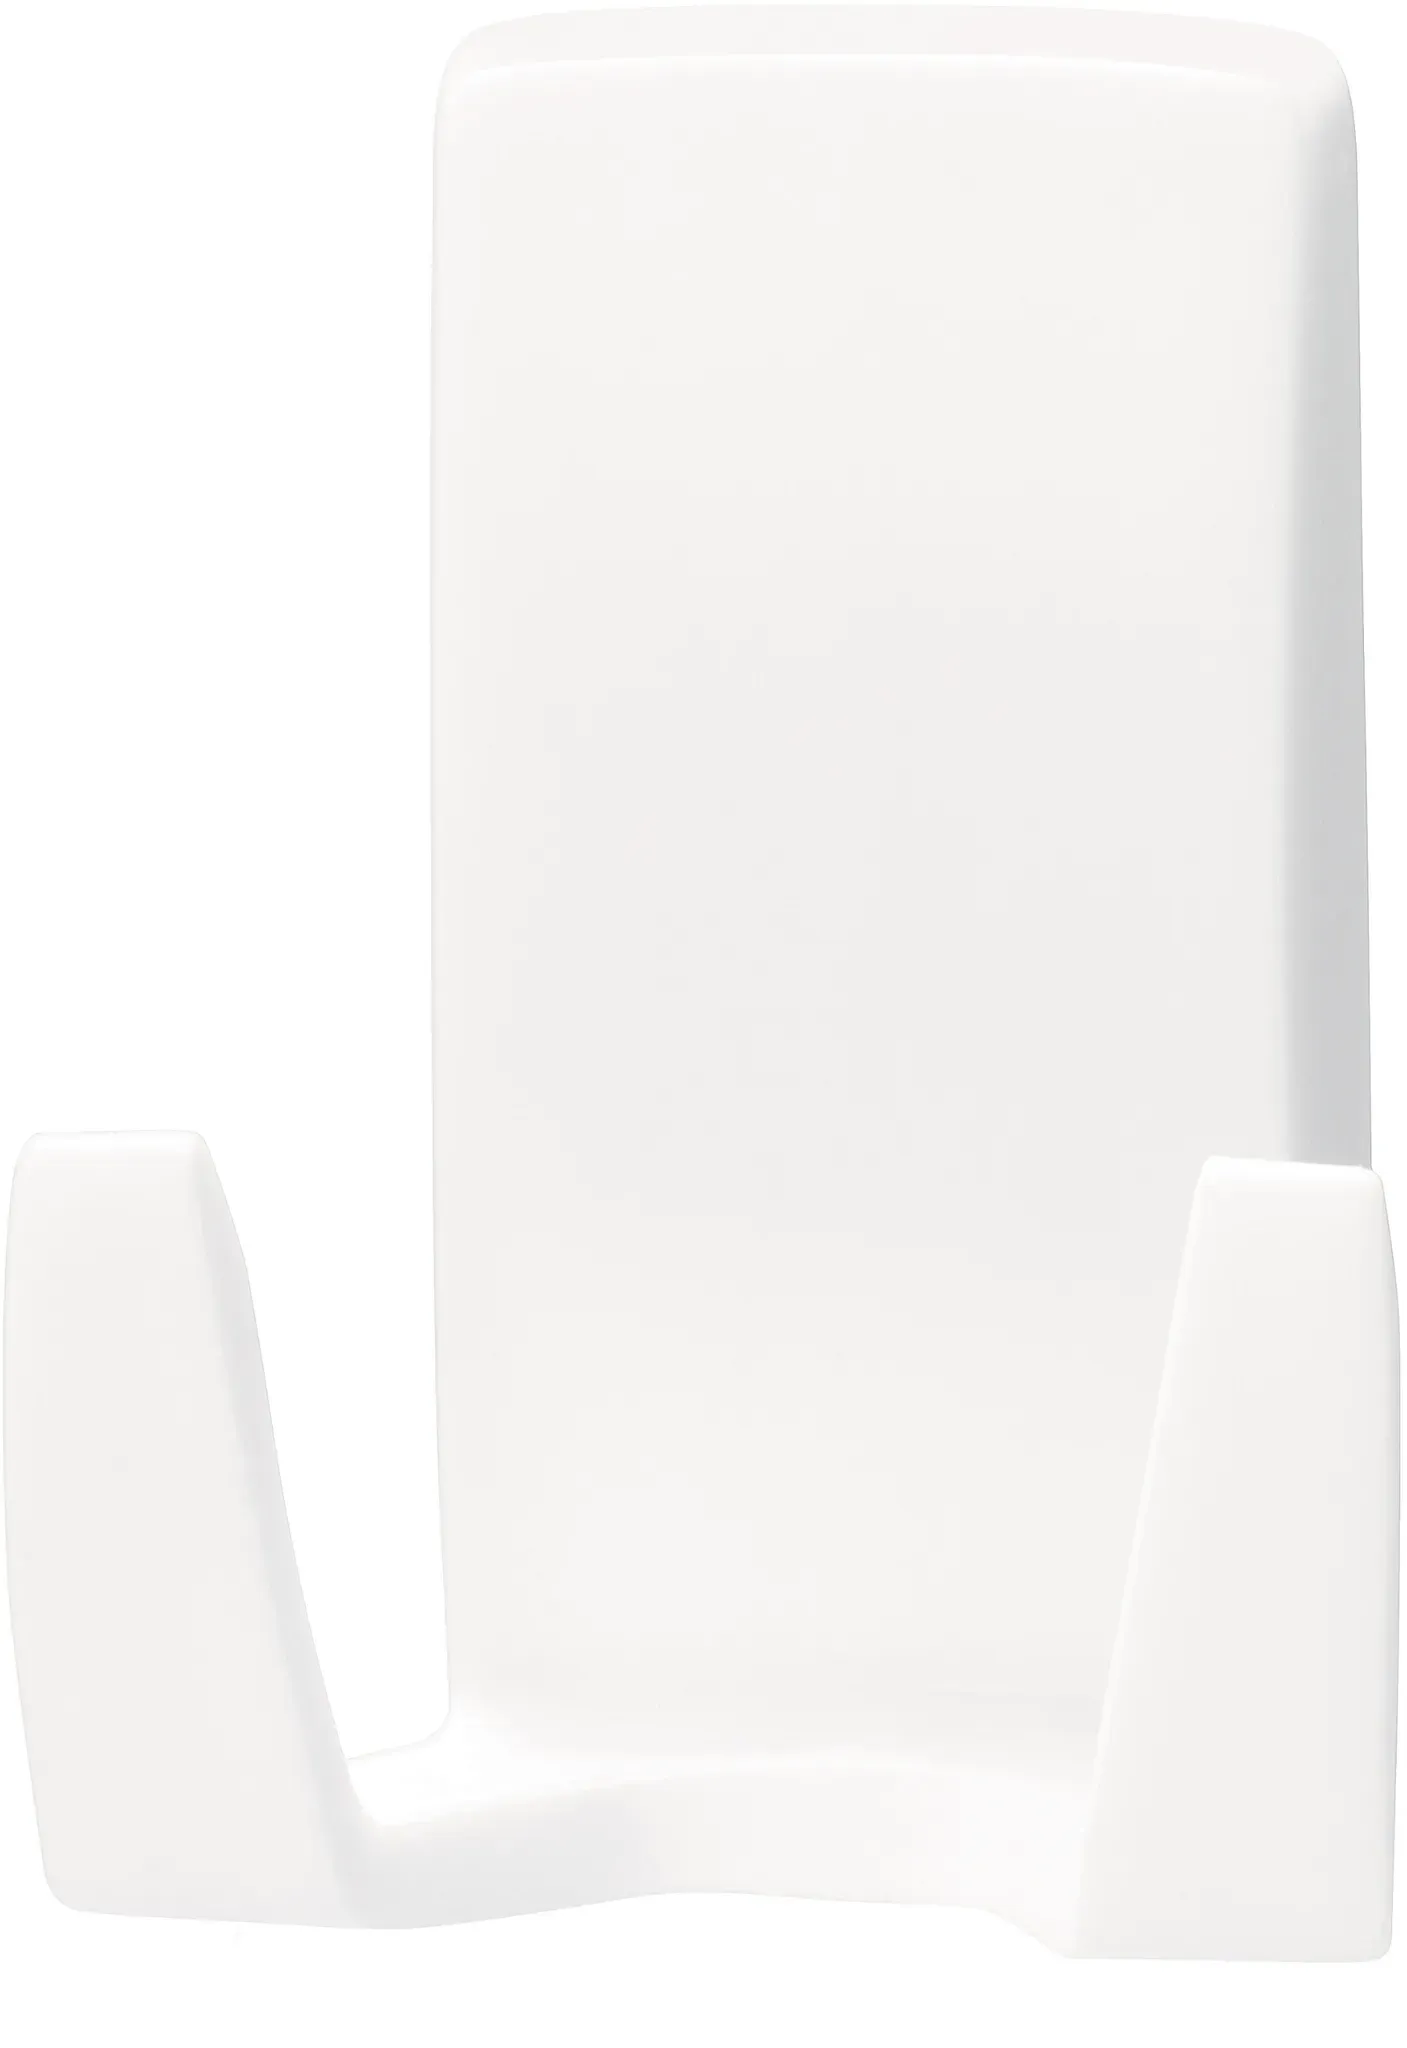 Rasierhalter tesa POWERSTRIPS (BHT 2,74x4,55x6,02 cm) - weiß